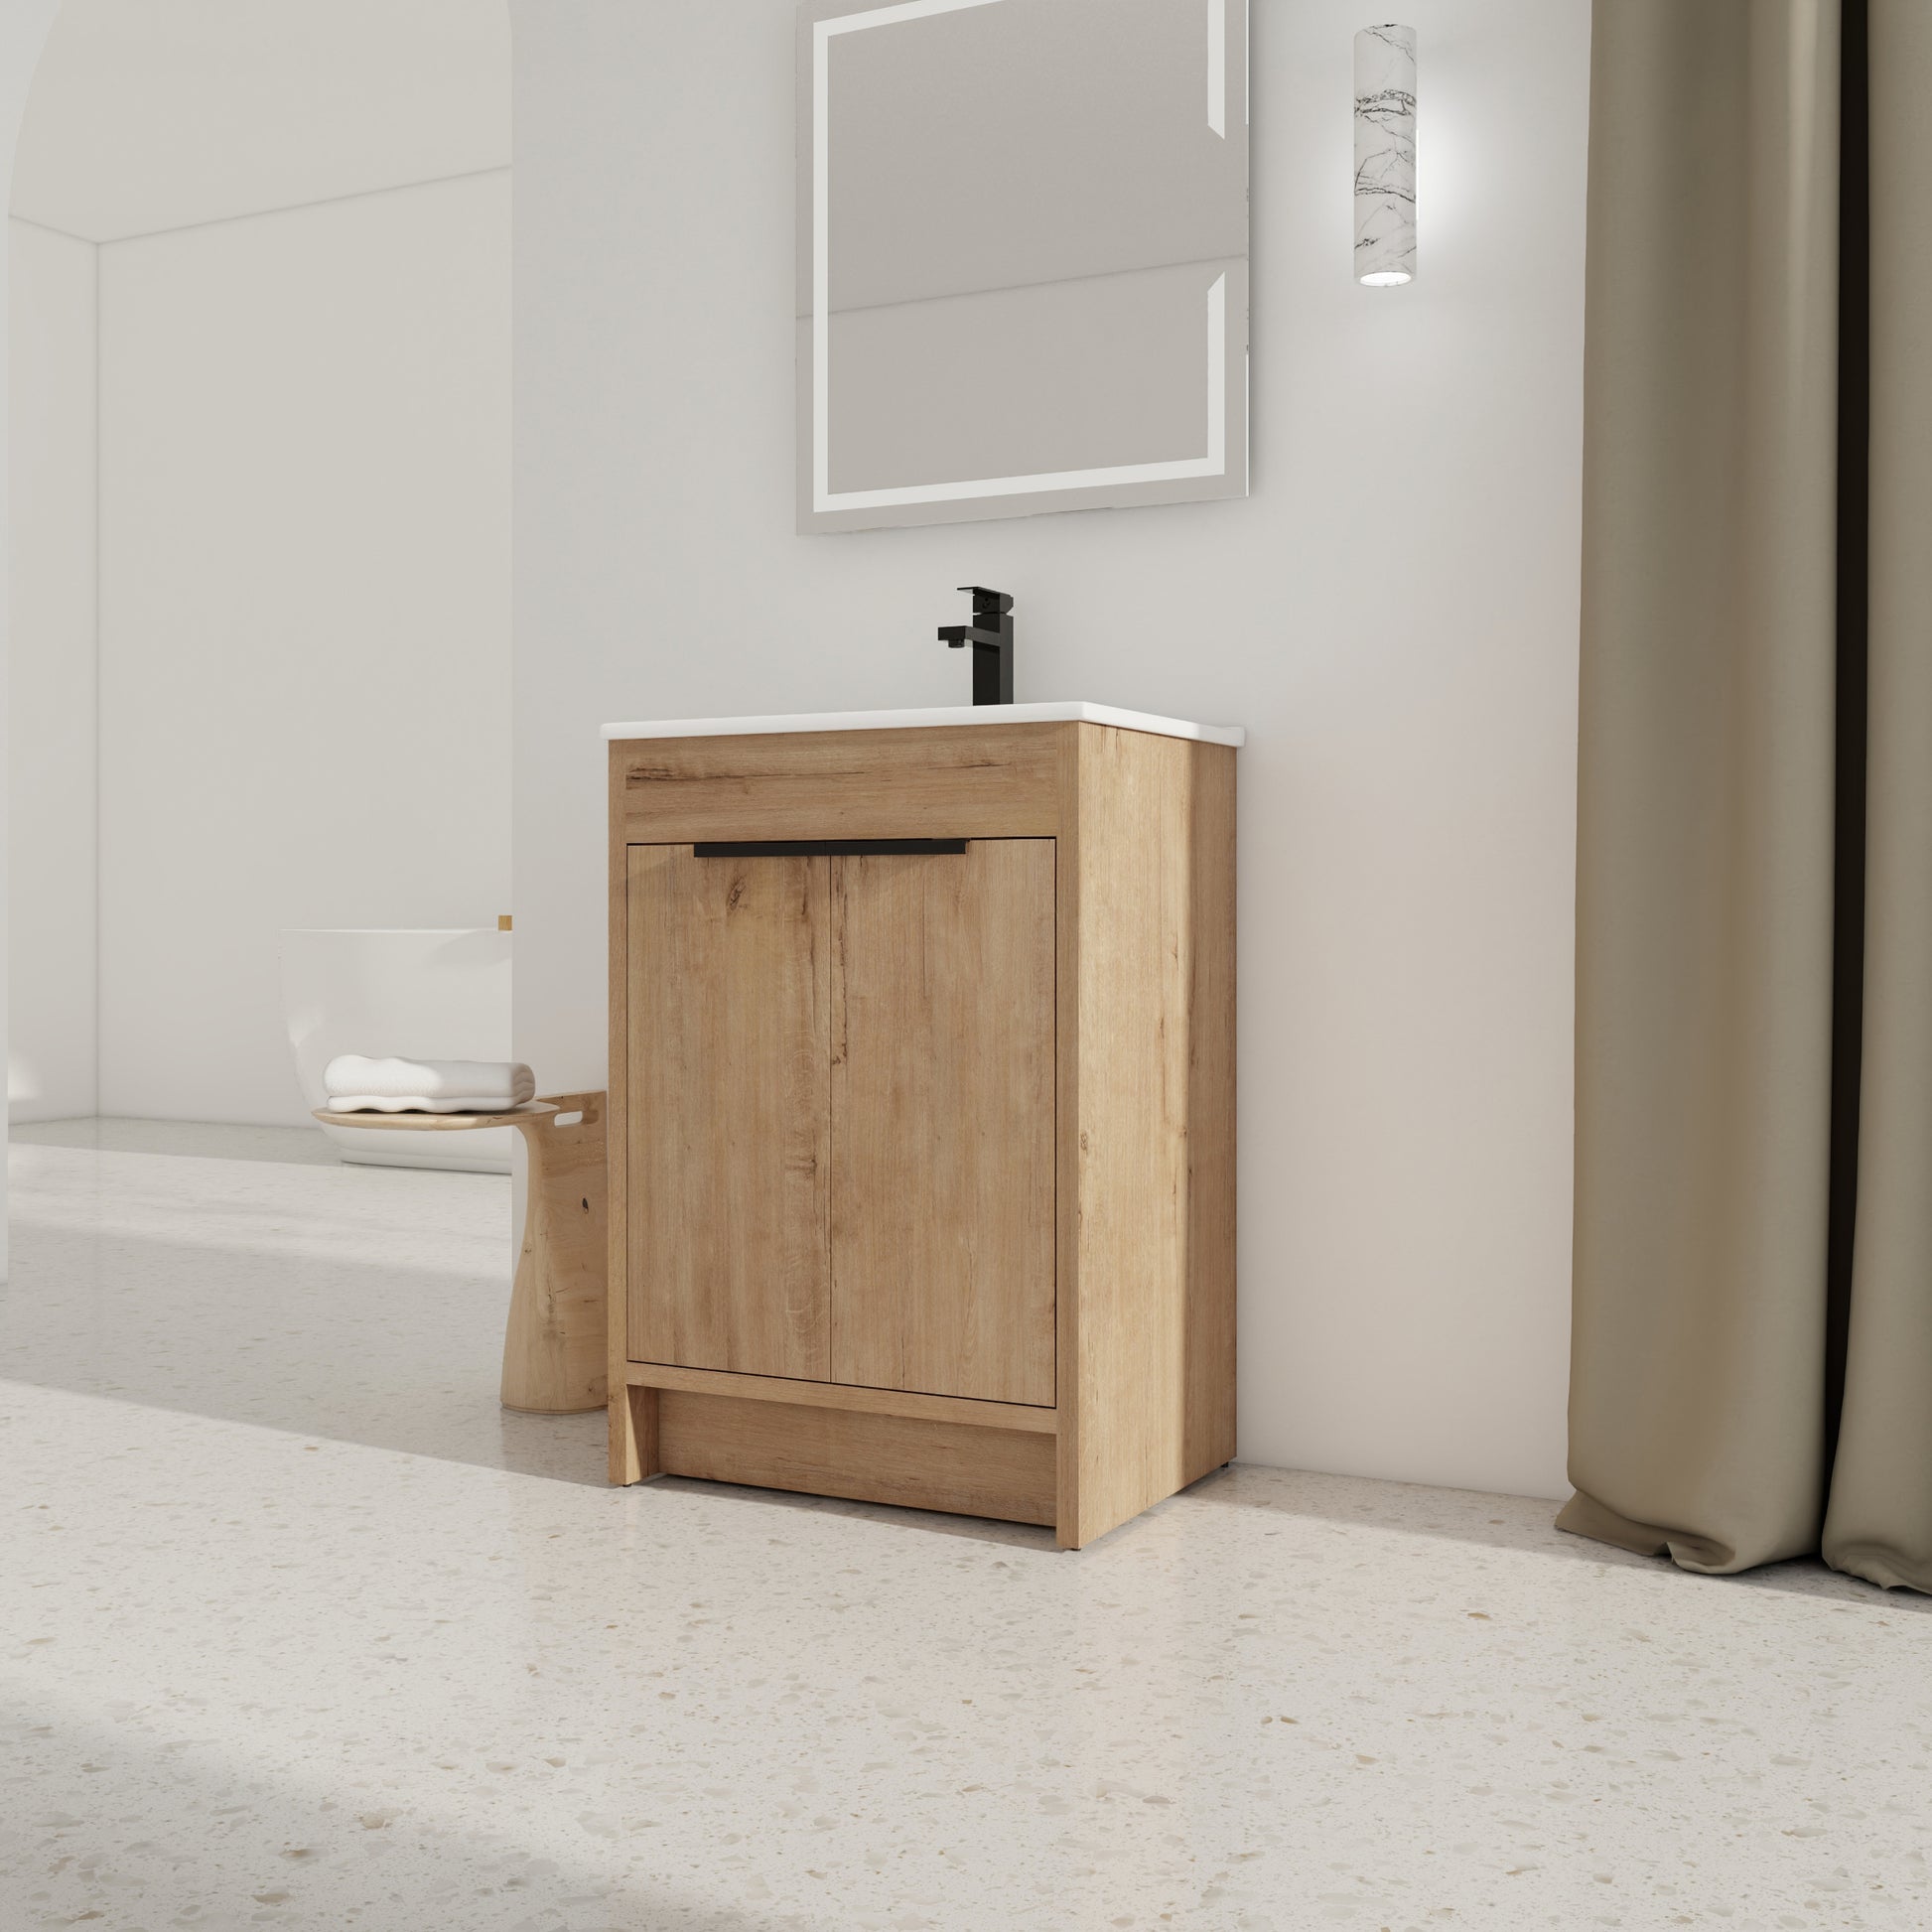 24" Freestanding Bathroom Vanity with White Ceramic imitative